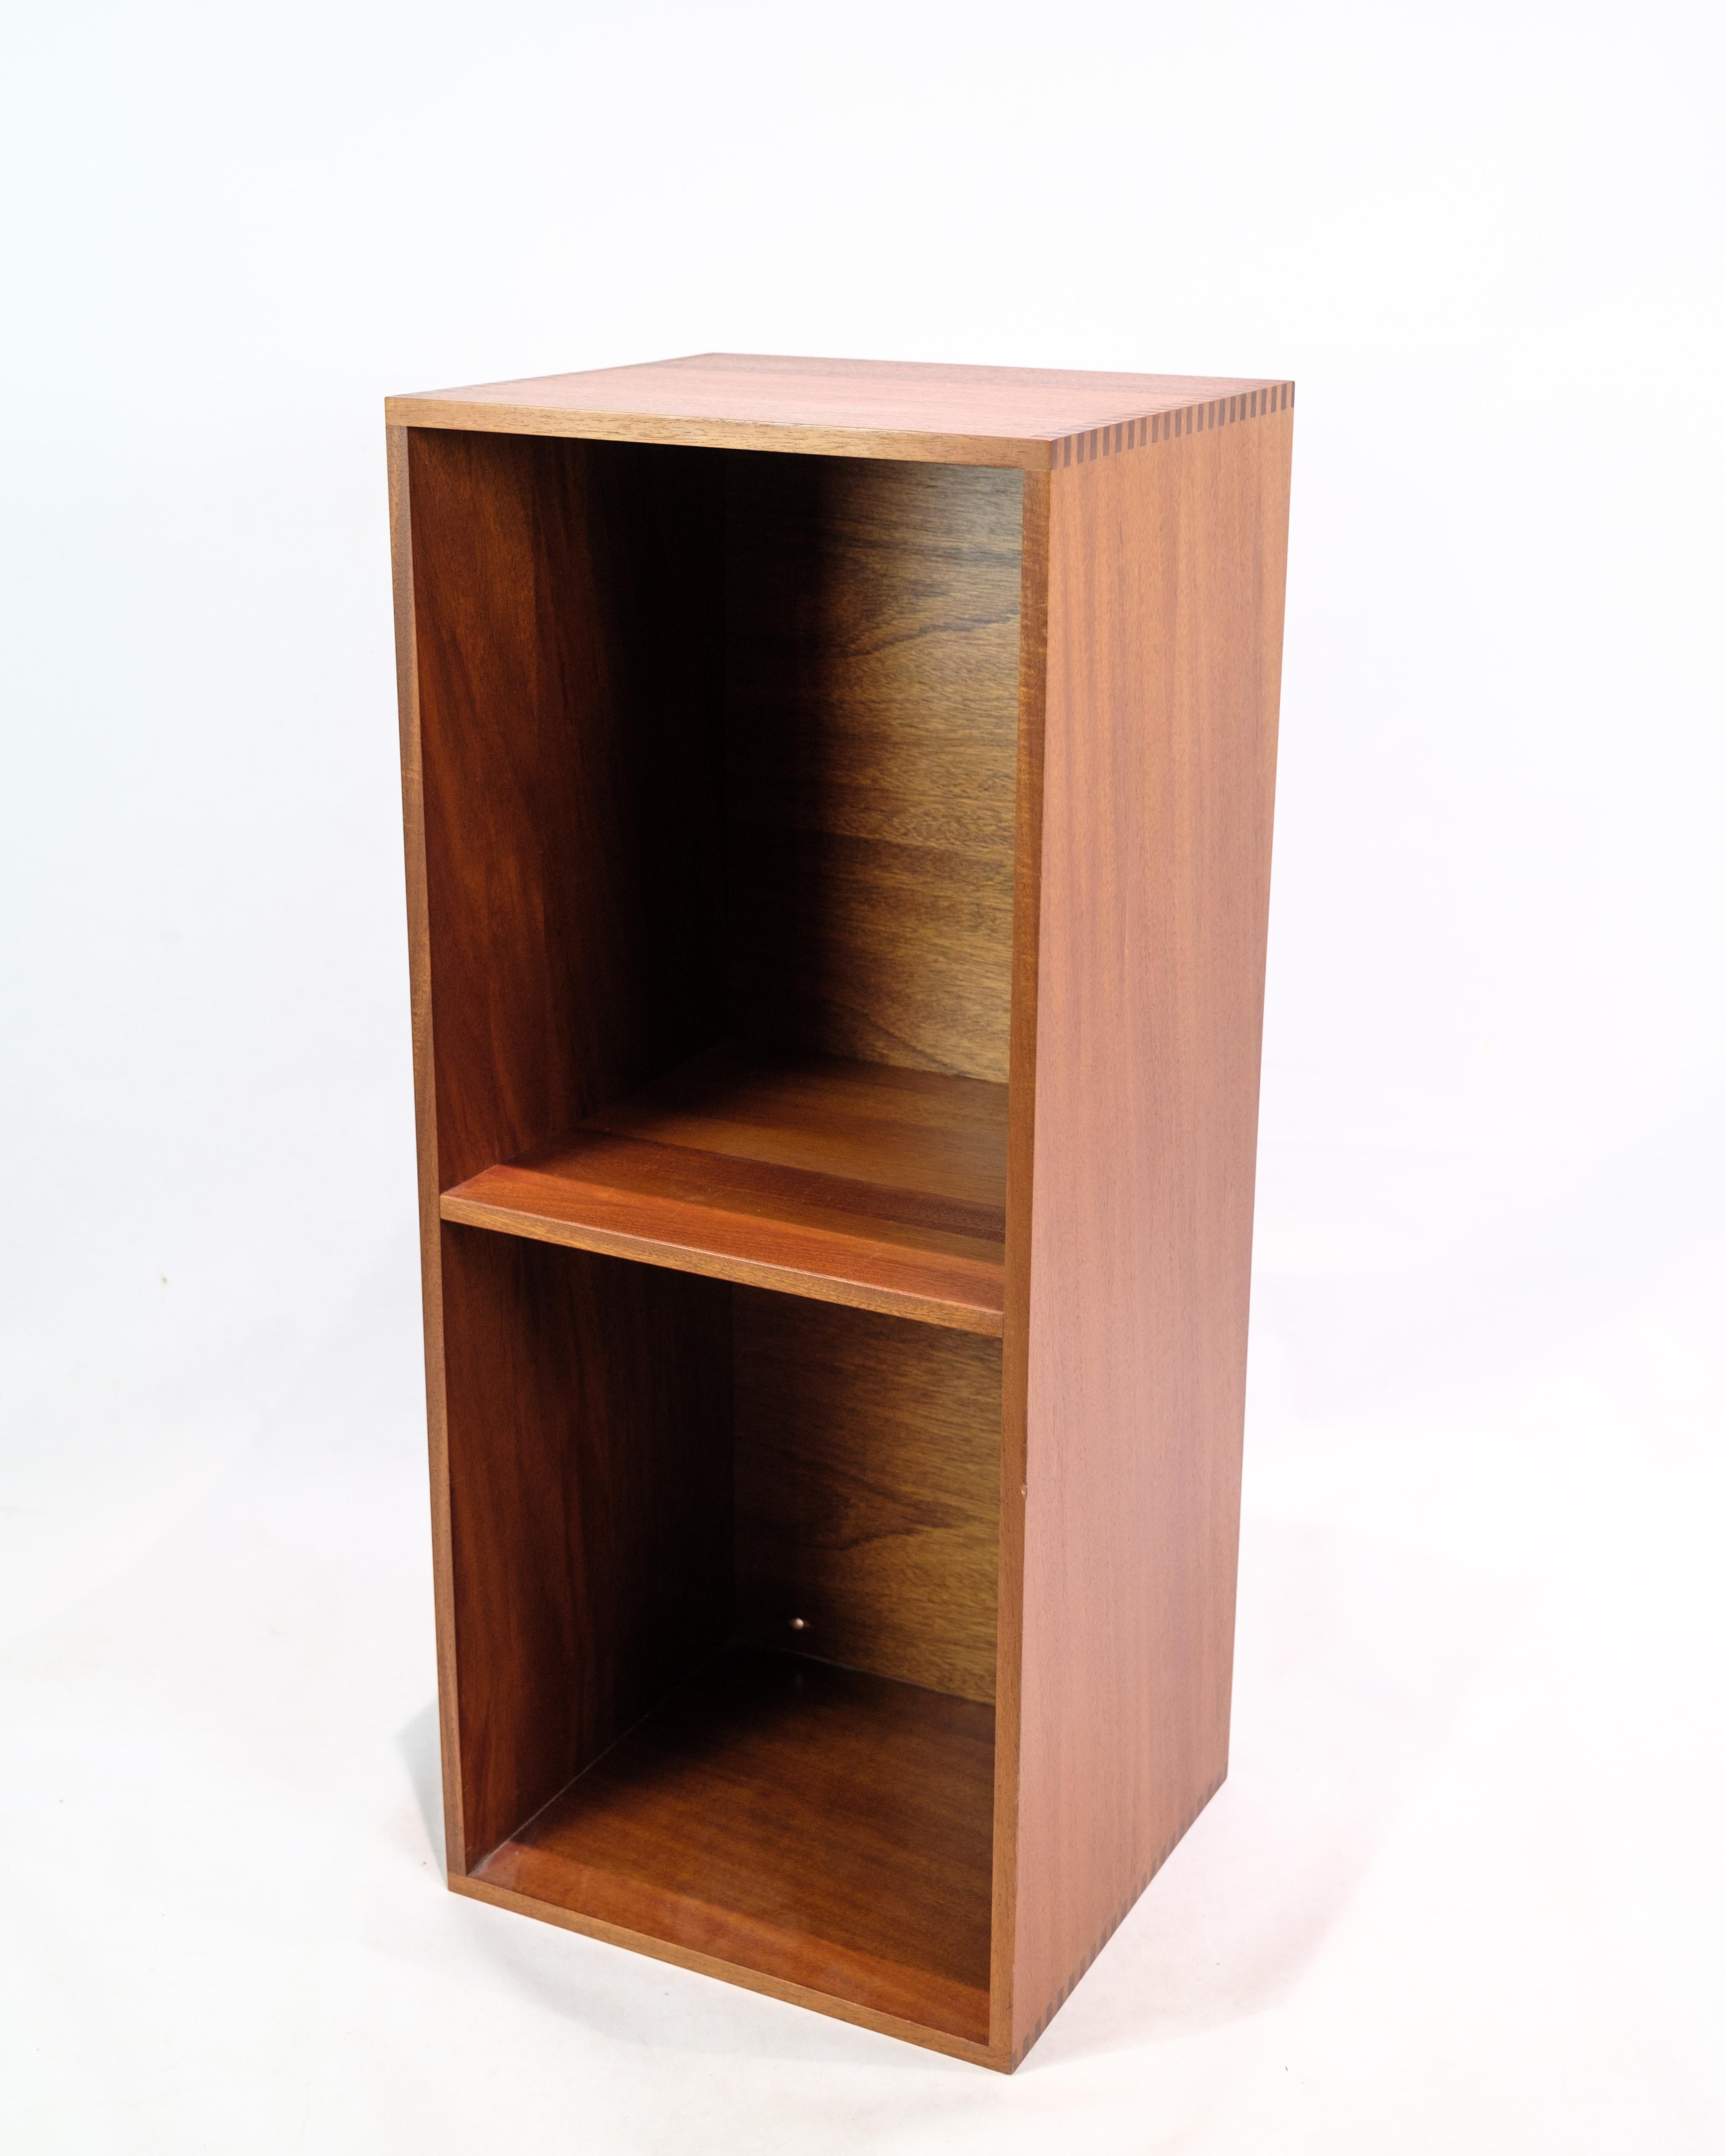 Dieses Bücherregal mit Regal ist ein Beispiel für dänisches Design aus den 1960er Jahren, hergestellt aus Teakholz. Es repräsentiert eine Ära, in der das dänische Möbeldesign aufblühte und aufgrund seiner Einfachheit, Funktionalität und hohen